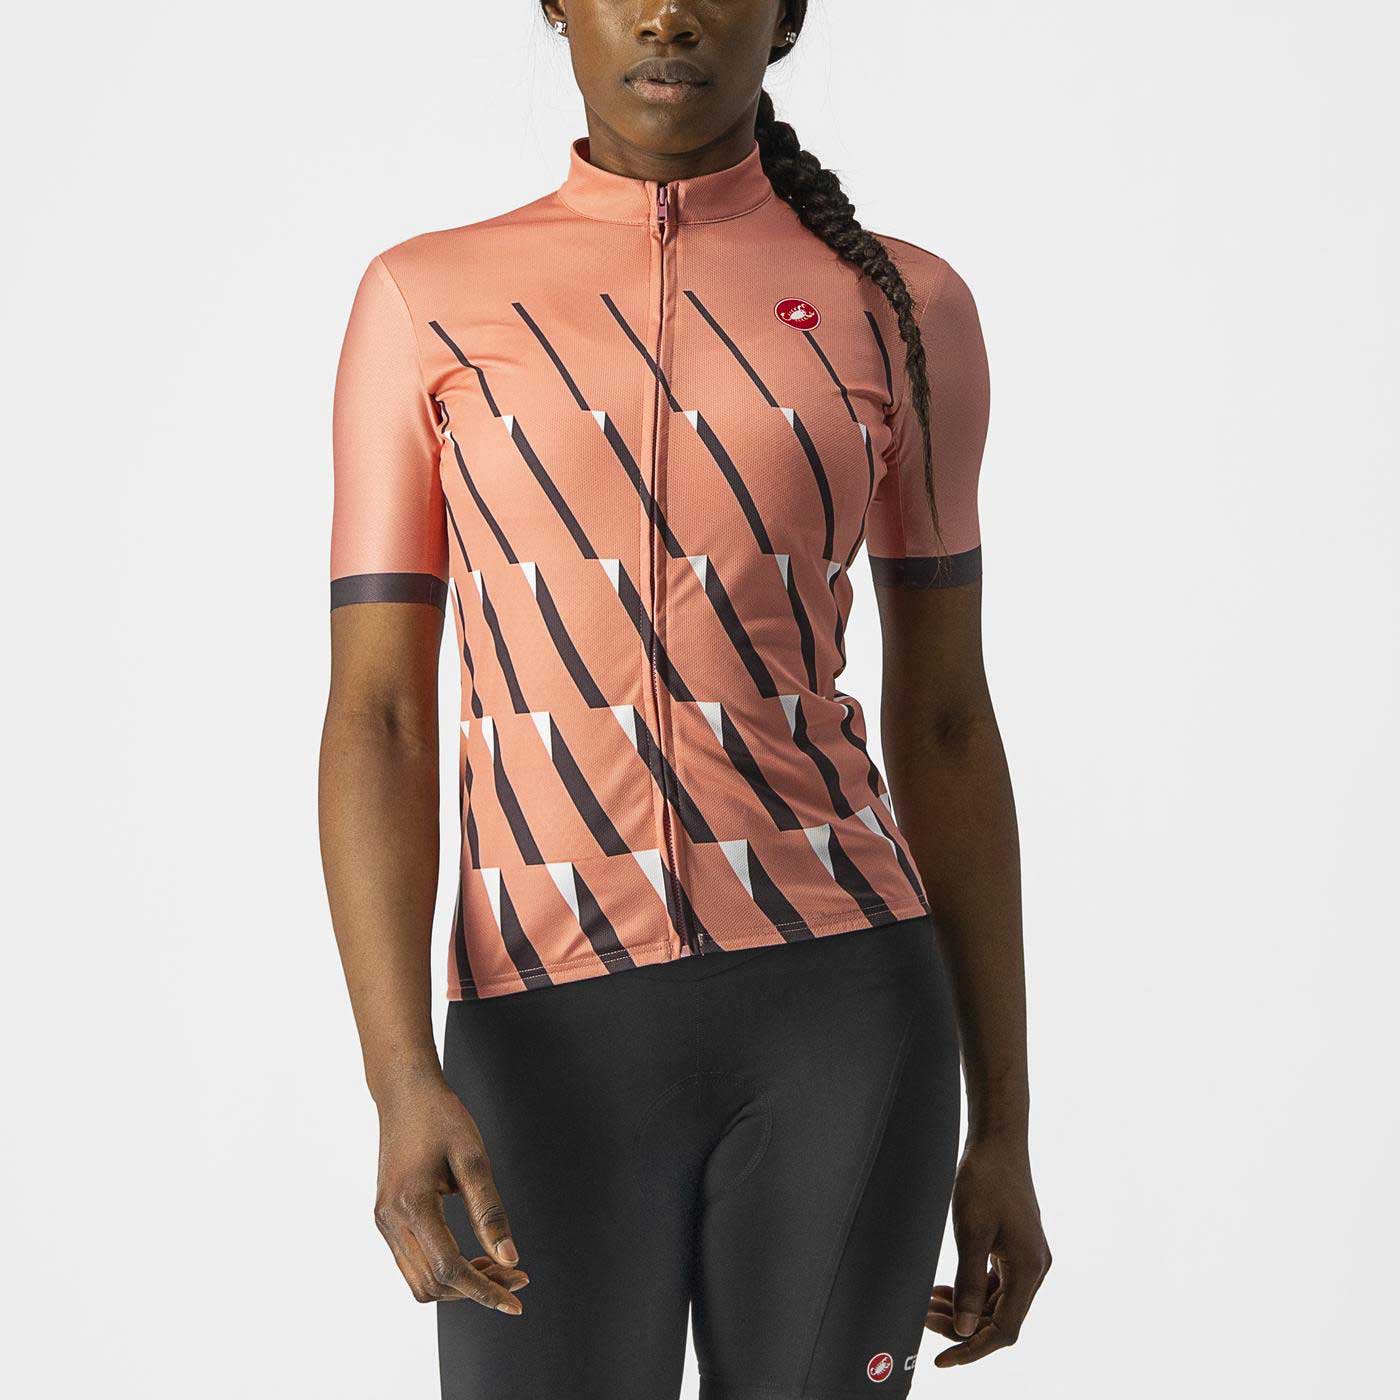 Ženski biciklistički dres